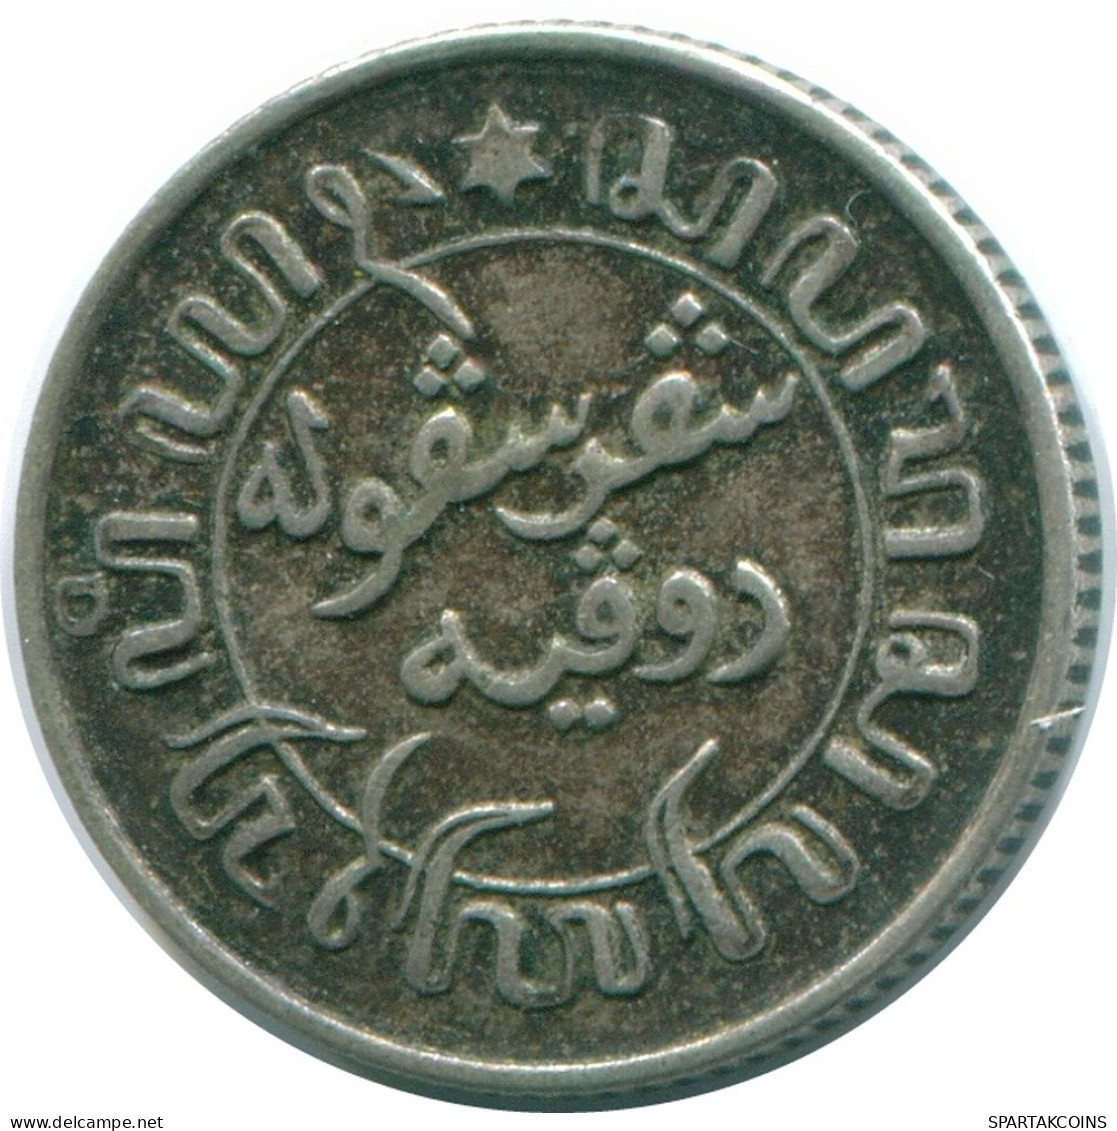 1/10 GULDEN 1941 P NIEDERLANDE OSTINDIEN SILBER Koloniale Münze #NL13734.3.D.A - Niederländisch-Indien